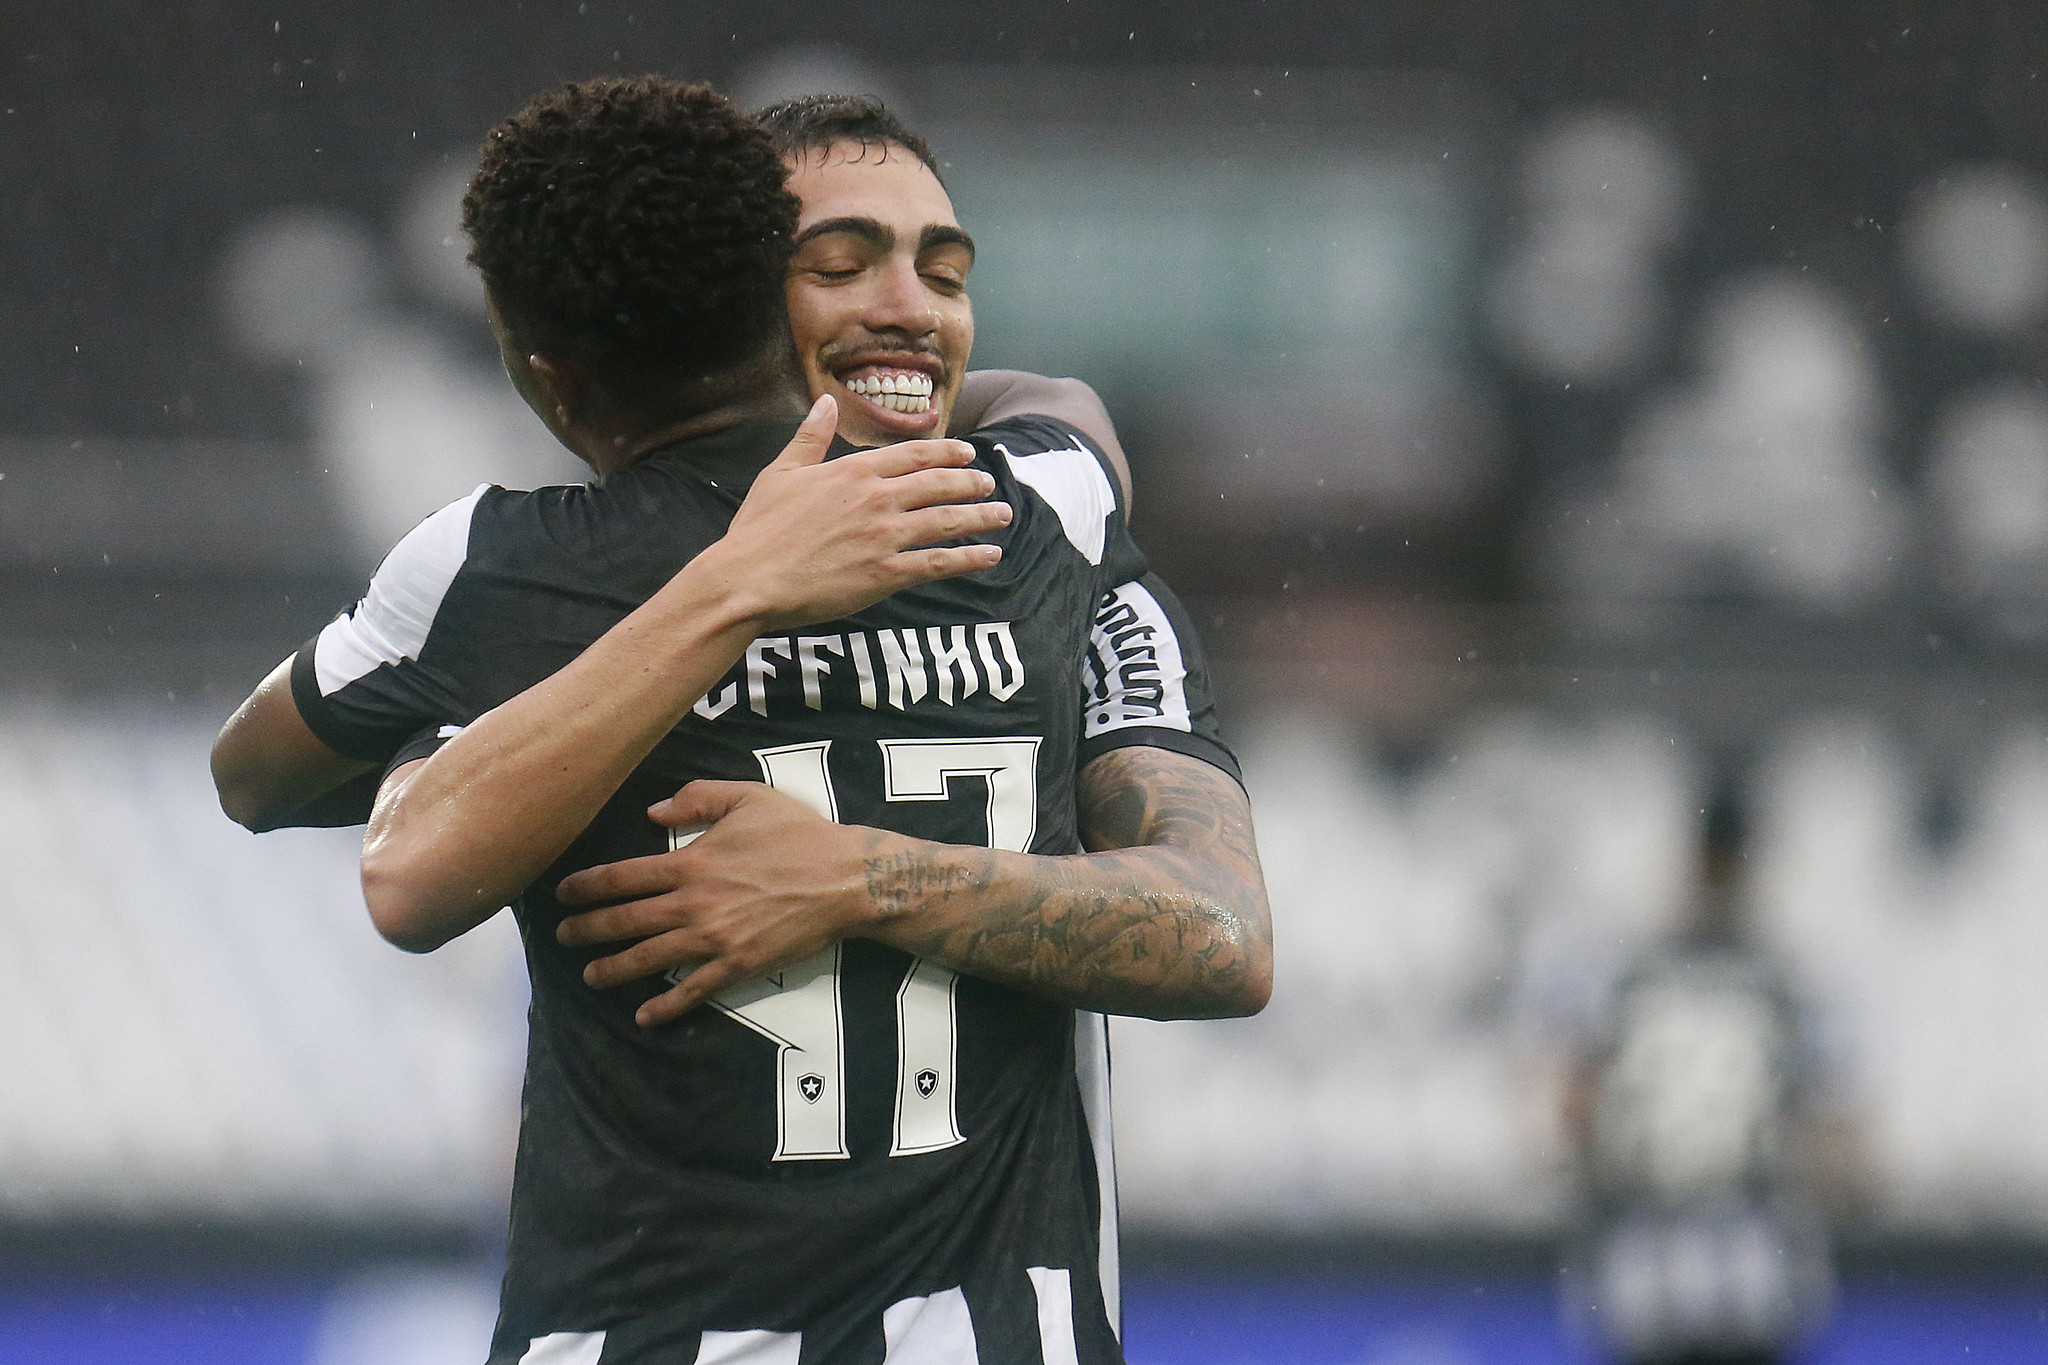 Jeffinho e Hugo comemorando o segundo gol do Botafogo. (Foto: Vitor Silva/Botafogo)